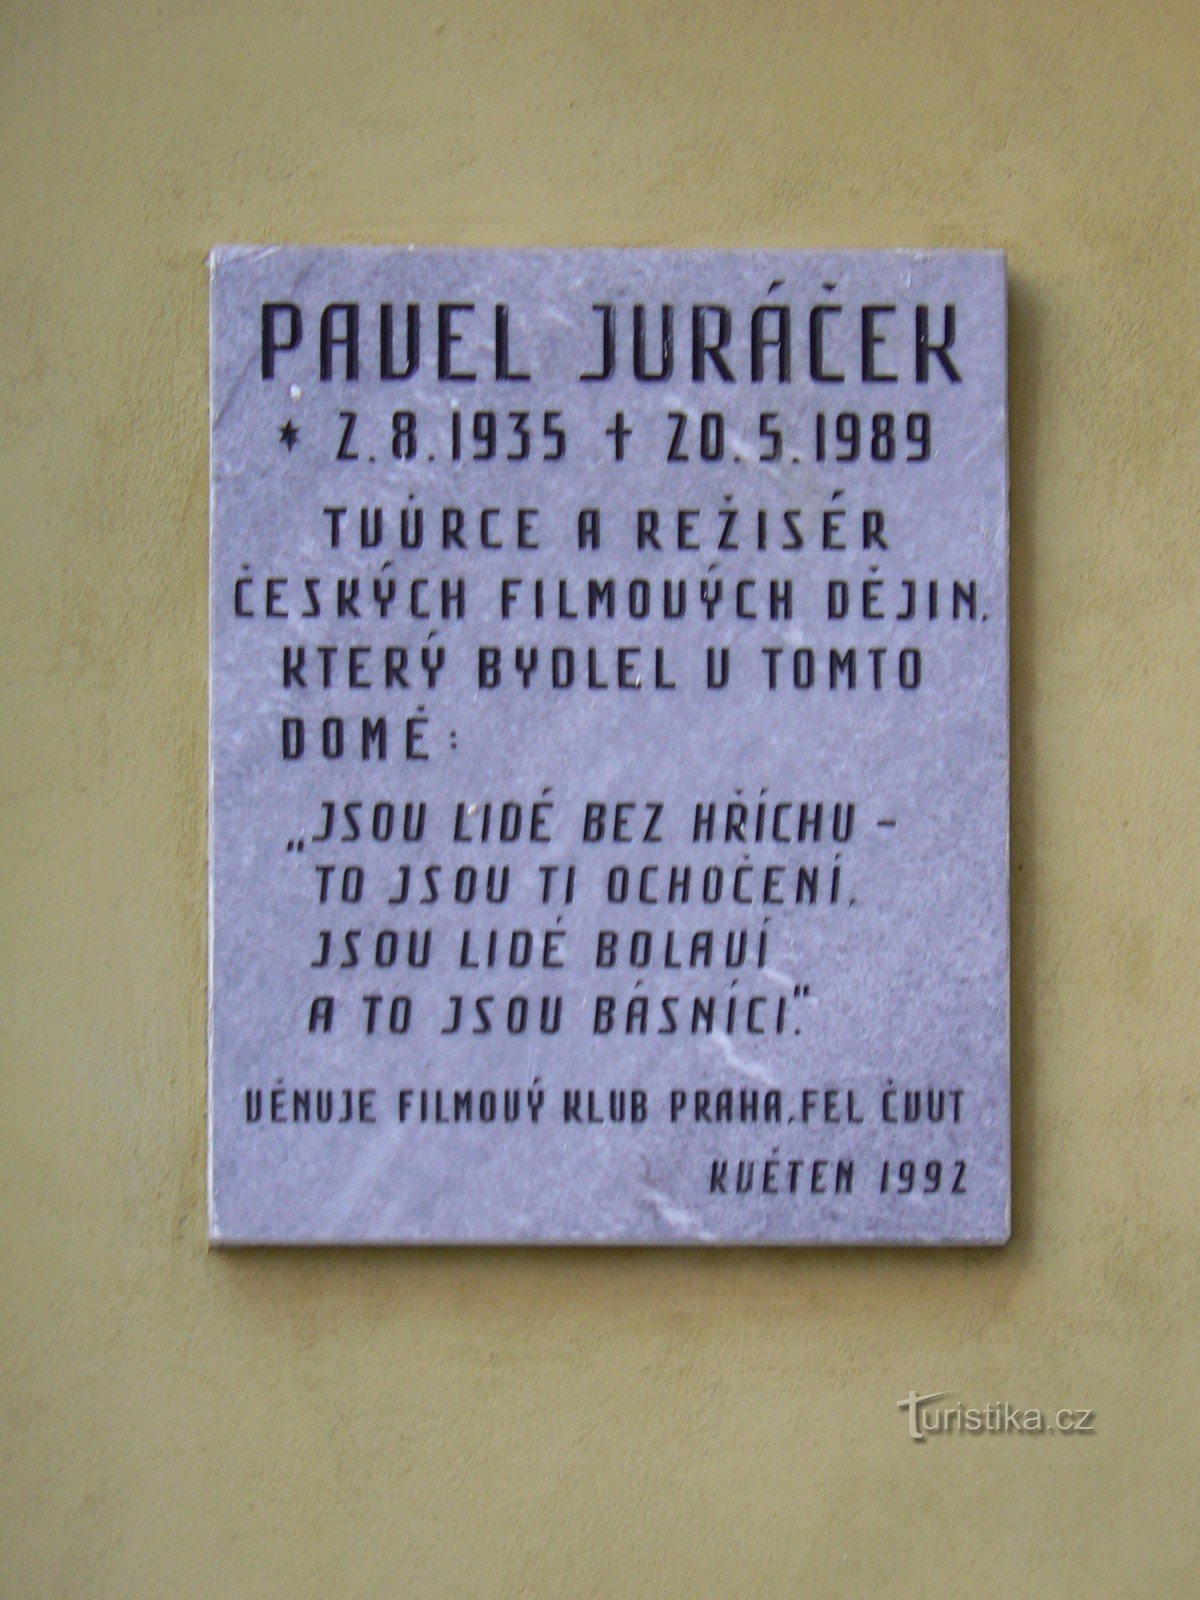 Spominska plošča Pavel Juráček